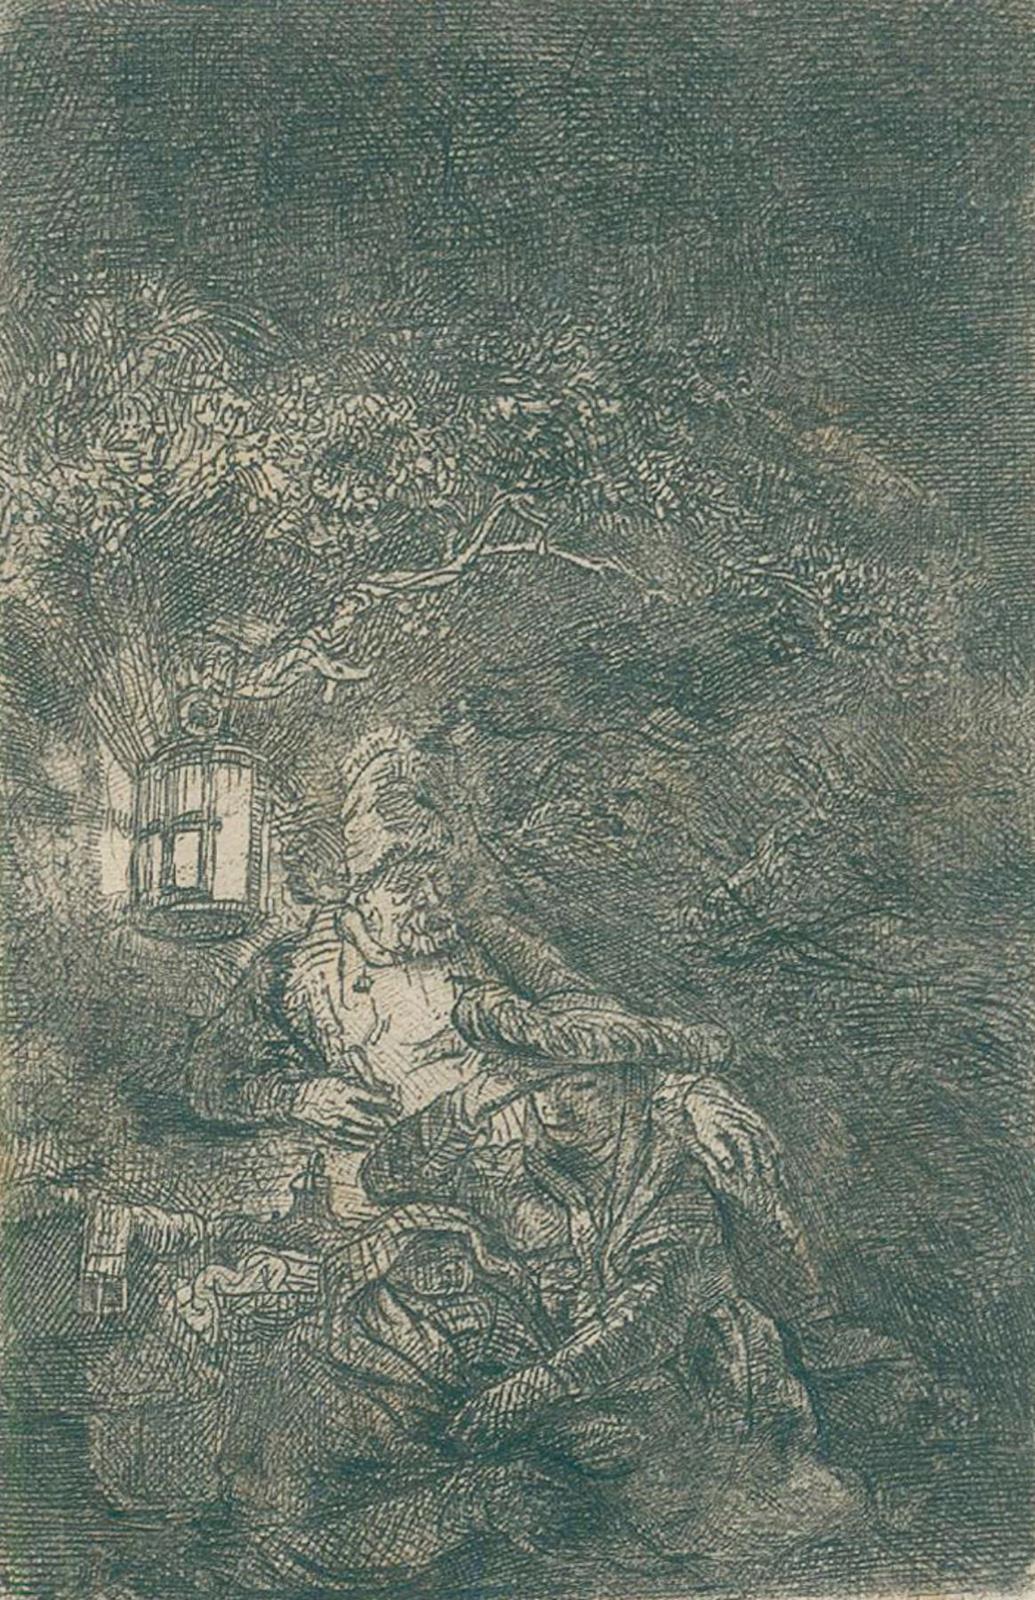 Rembrandt van Rijn, Harmensz. | Bild Nr.1